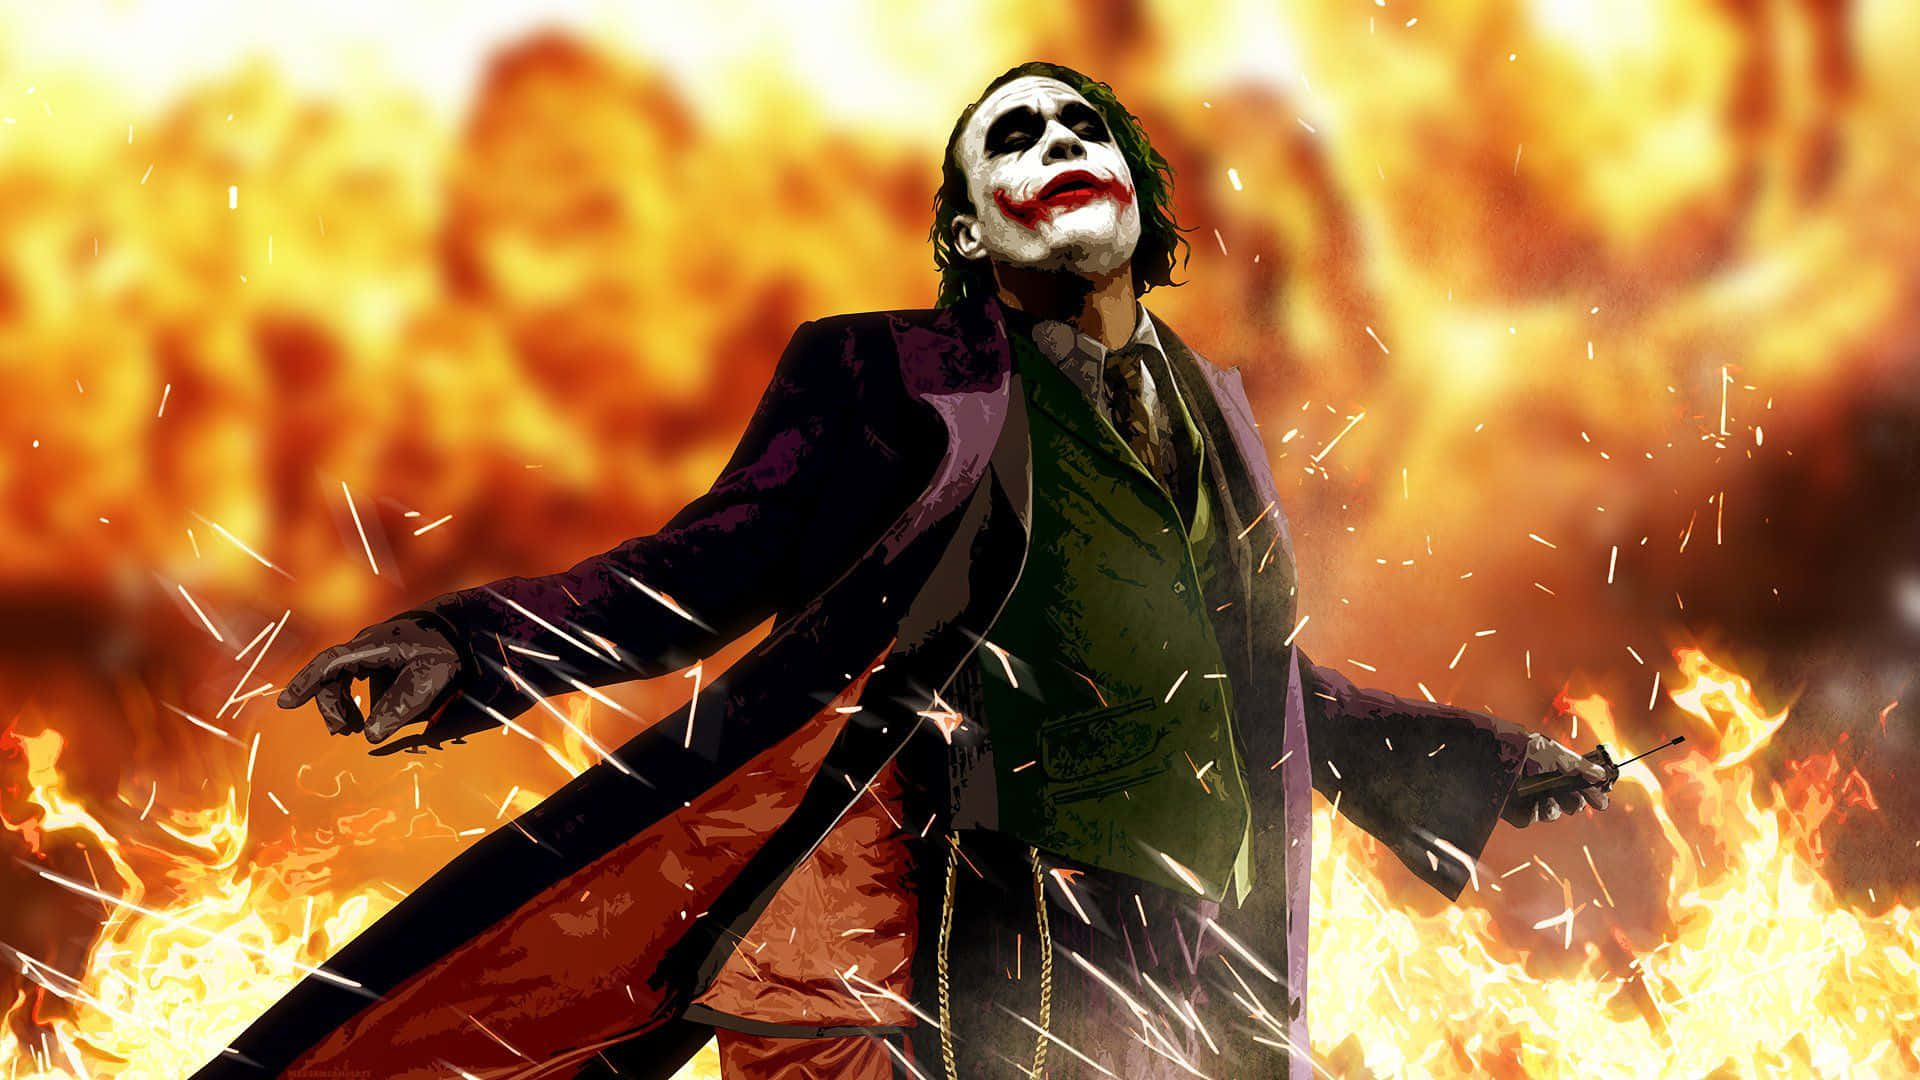 Cool Dangerous Joker Flames Art Wallpaper